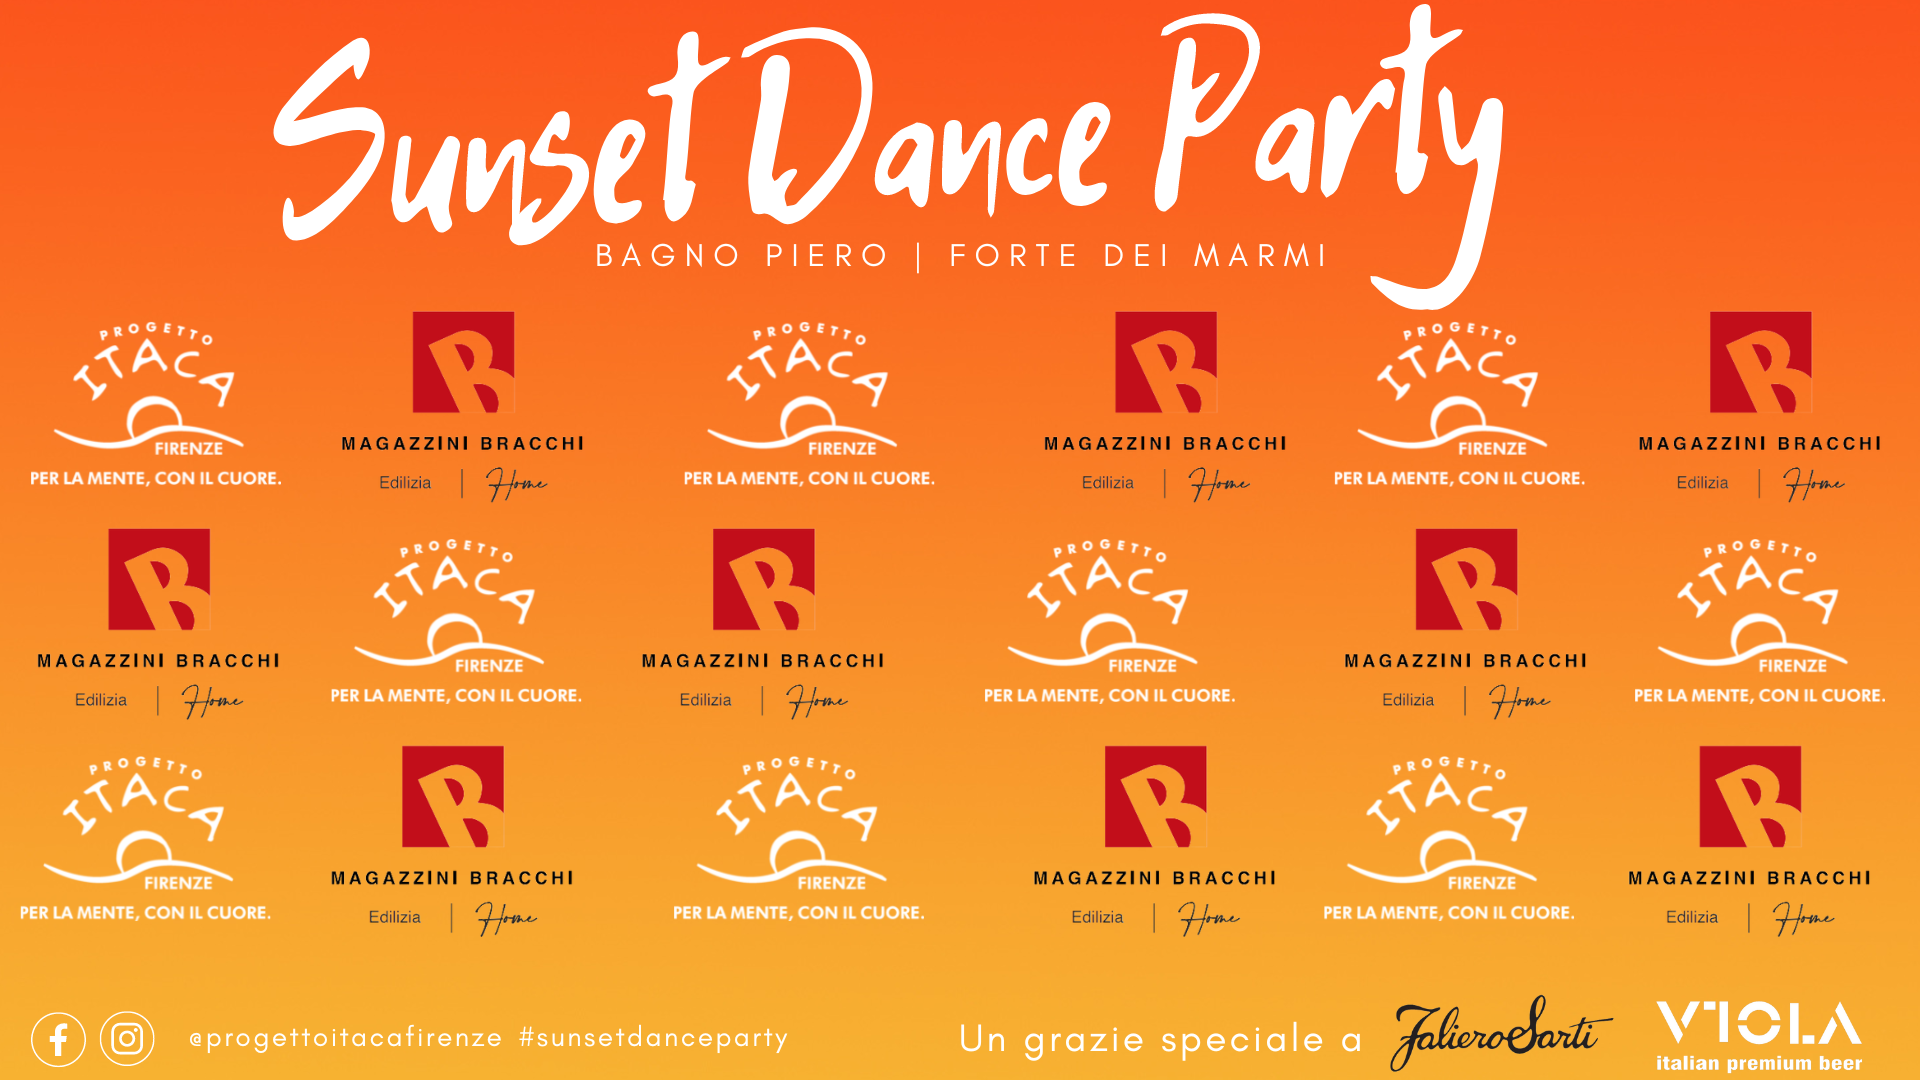 Sunset Dance Party – Serata benefica di Progetto Itaca Firenze al Bagno Piero di Forte dei Marmi